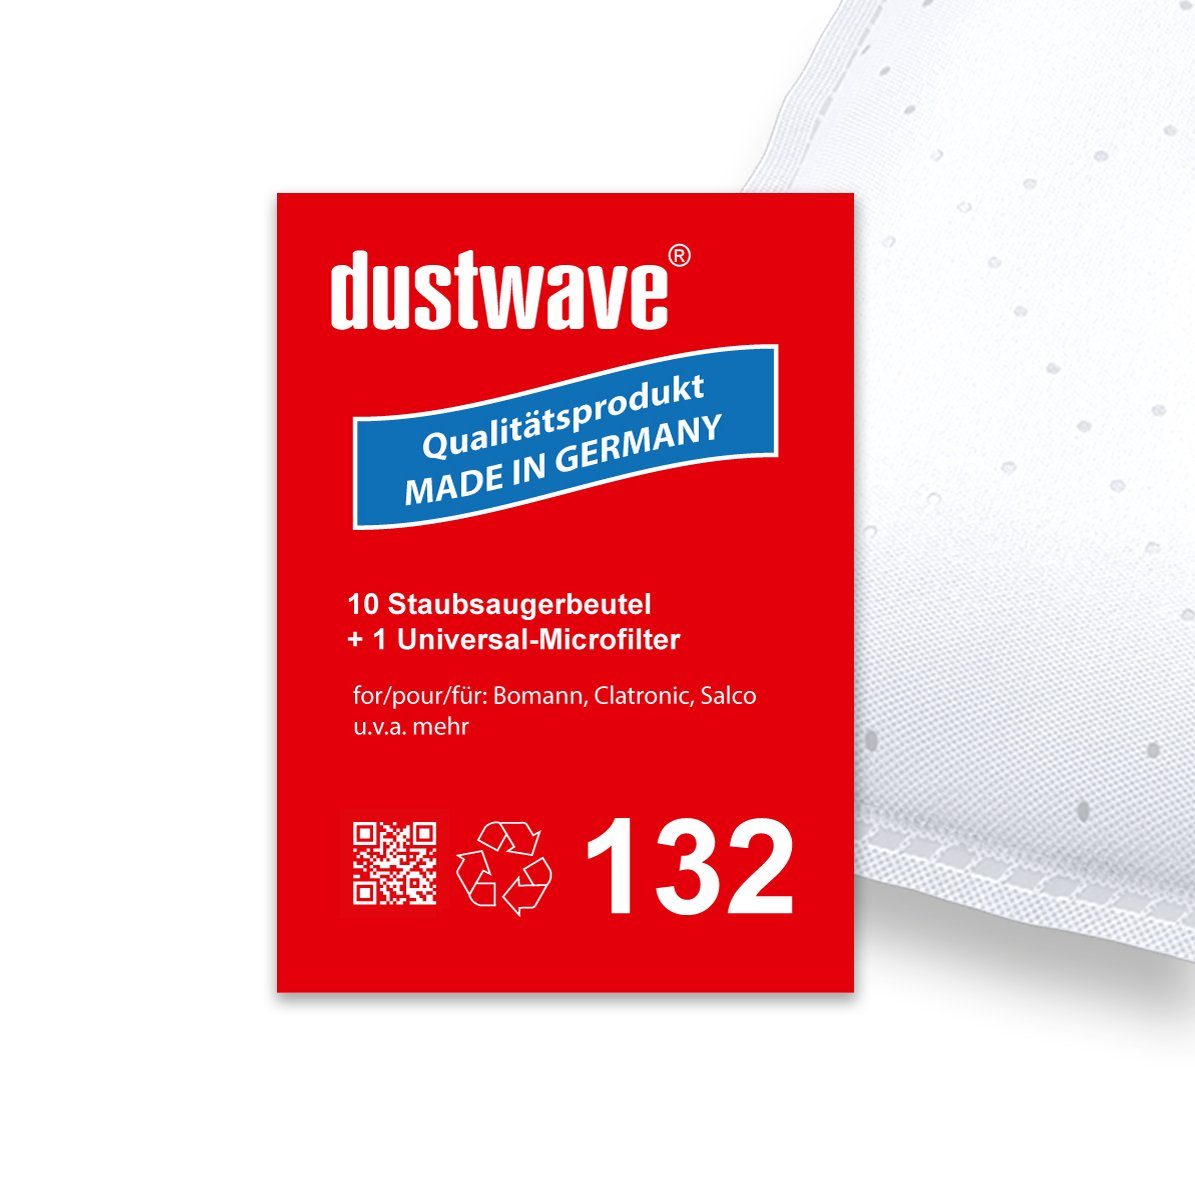 Dustwave Staubsaugerbeutel Sparpack, passend für Circon 4V14g, 10 St., Sparpack, 10 Staubsaugerbeutel + 1 Hepa-Filter (ca. 15x15cm - zuschneidbar)